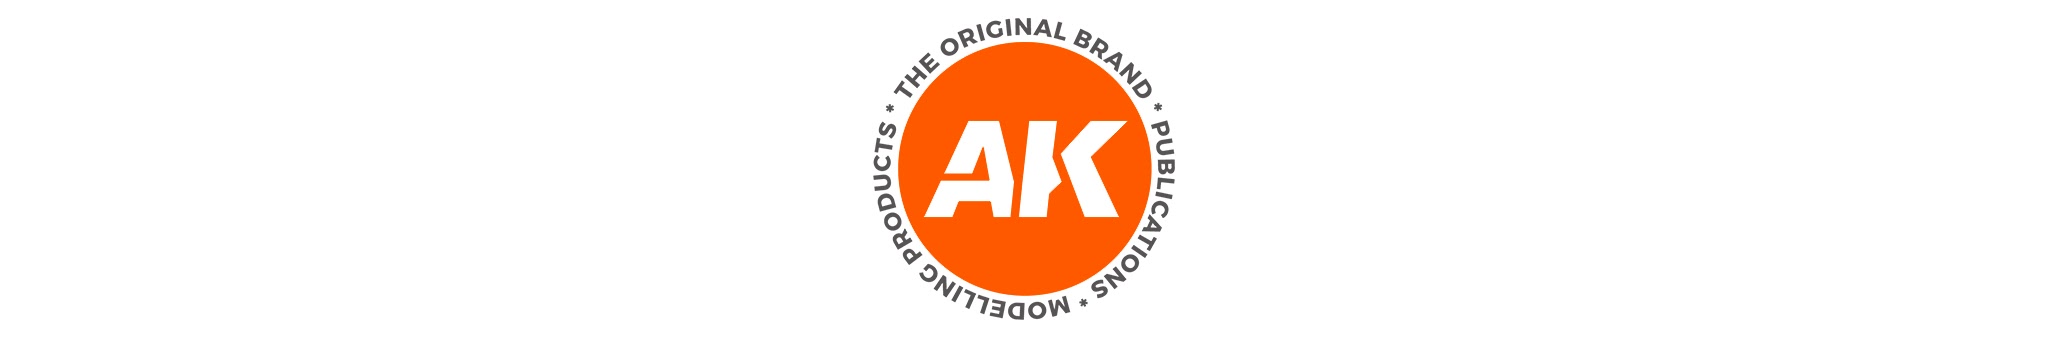 AK Interactive AK11613 Set Couleurs Peau et Cuir 6x17ml - Slot Car